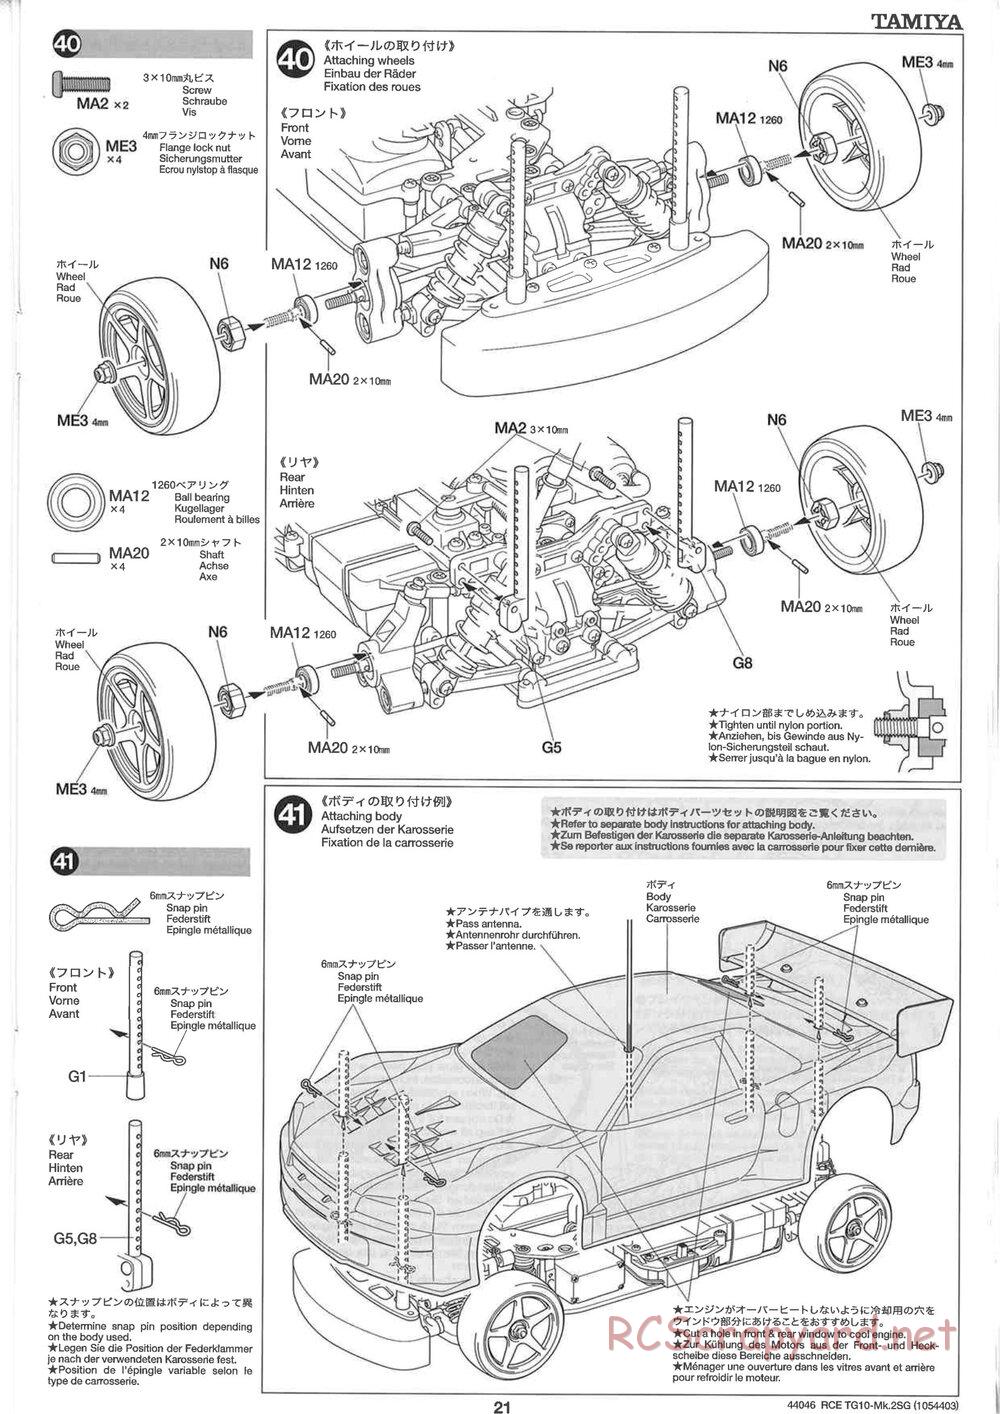 Tamiya - TG10 Mk.2SG Chassis - Manual - Page 21